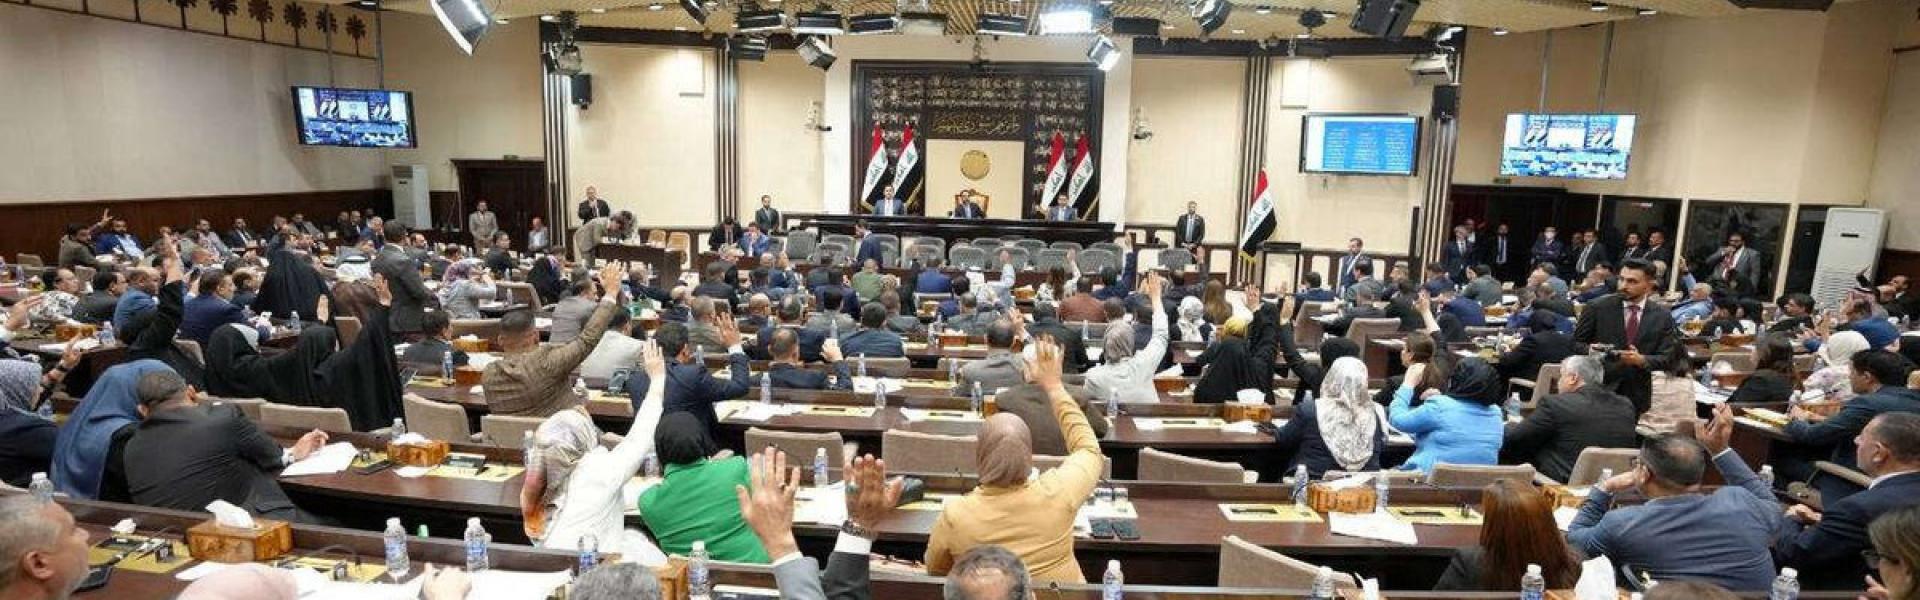 الانقسام السياسي يحول دون انتخاب رئيس جديد للبرلمان العراقي